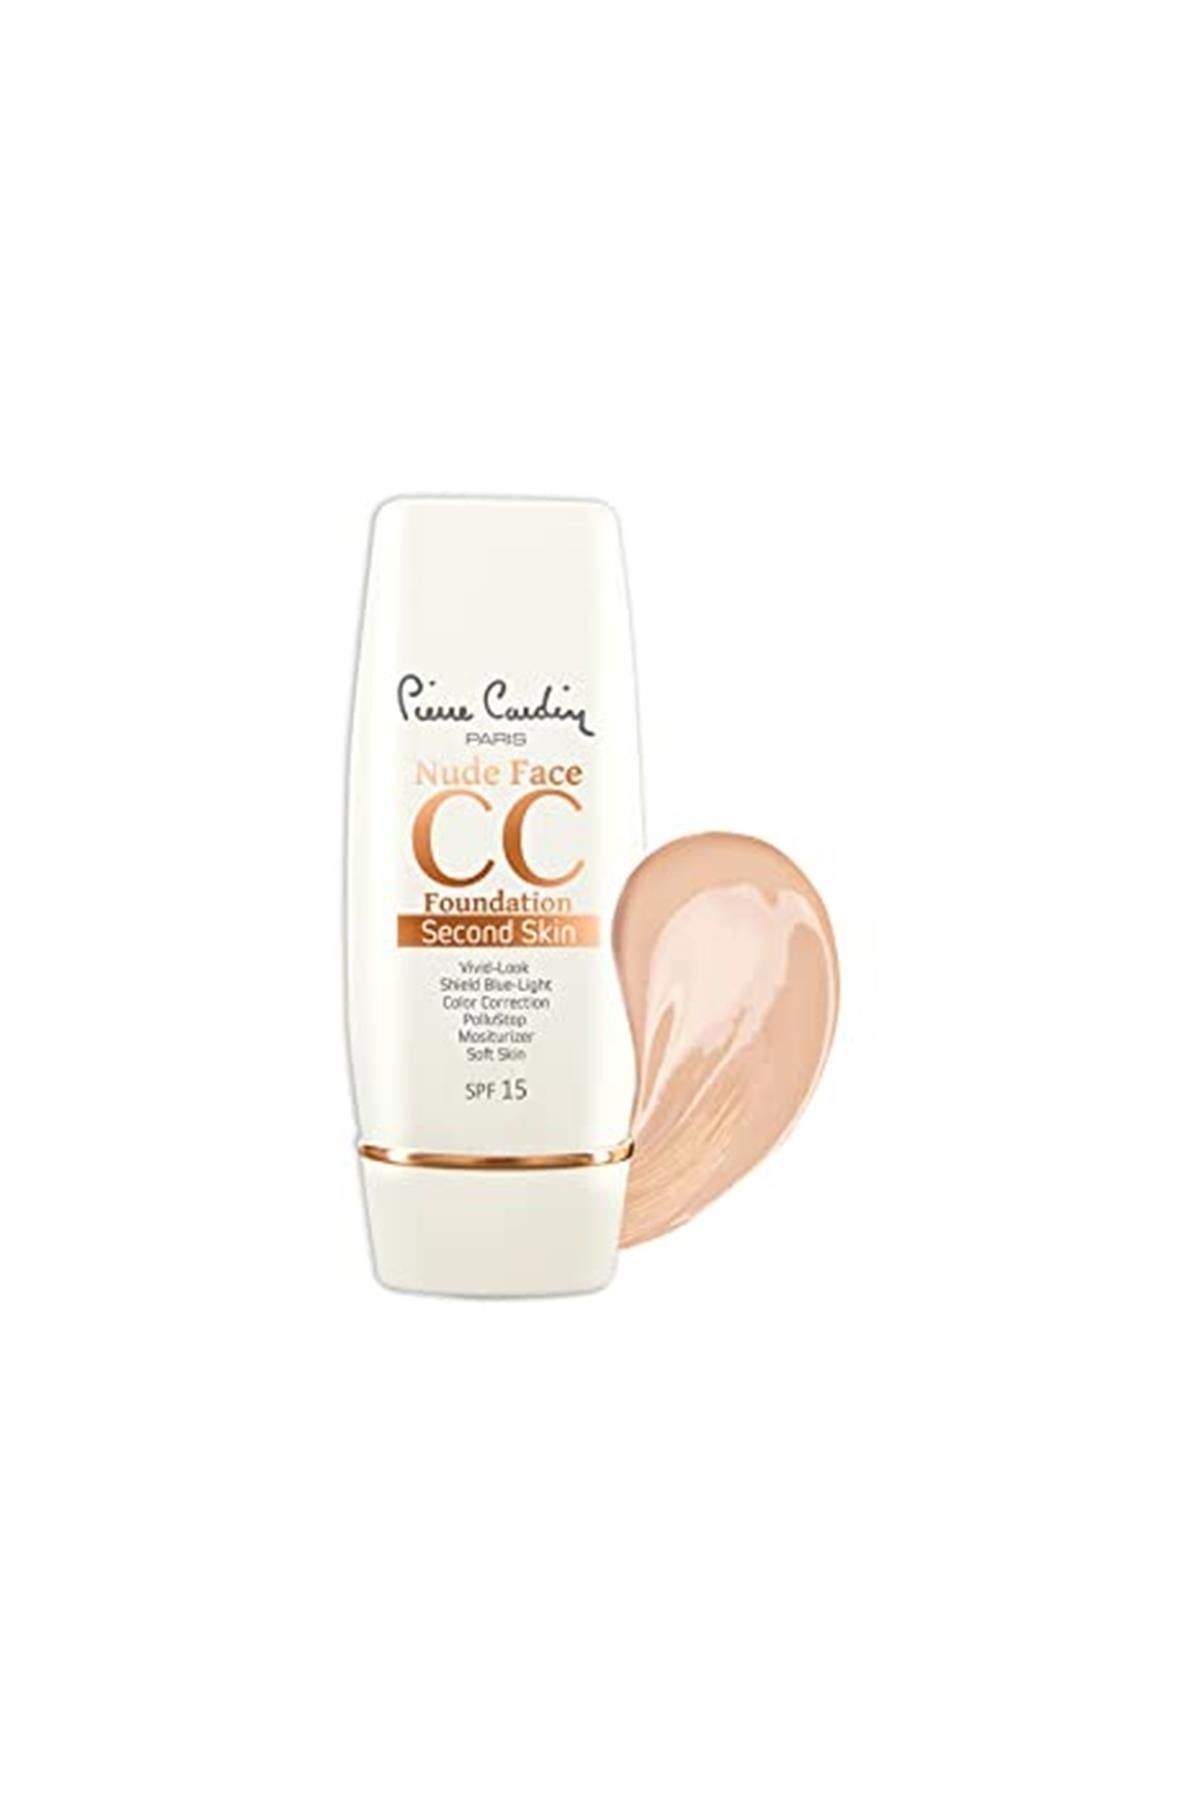 Pierre Cardin Nude Face Cc Cream (spf 15) - Medium